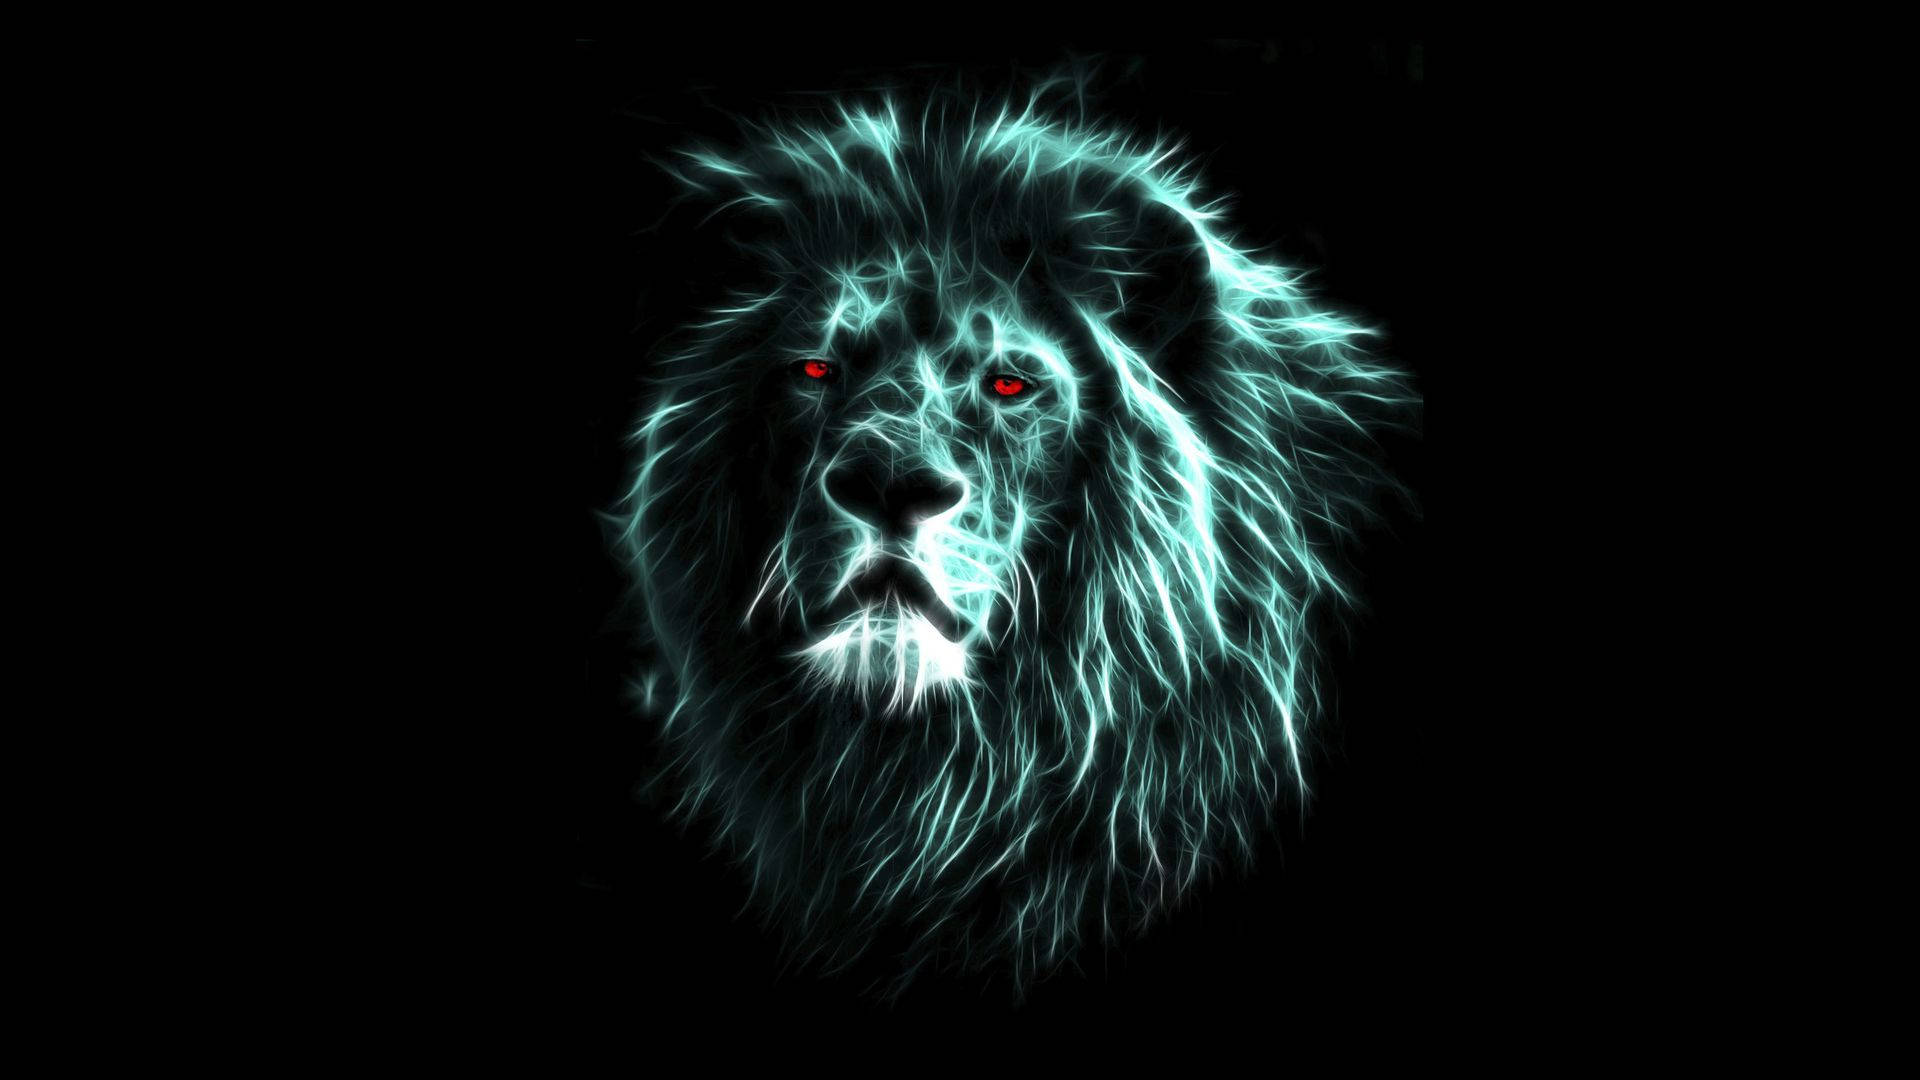 Cool Digital Art Of 3d Lion Background